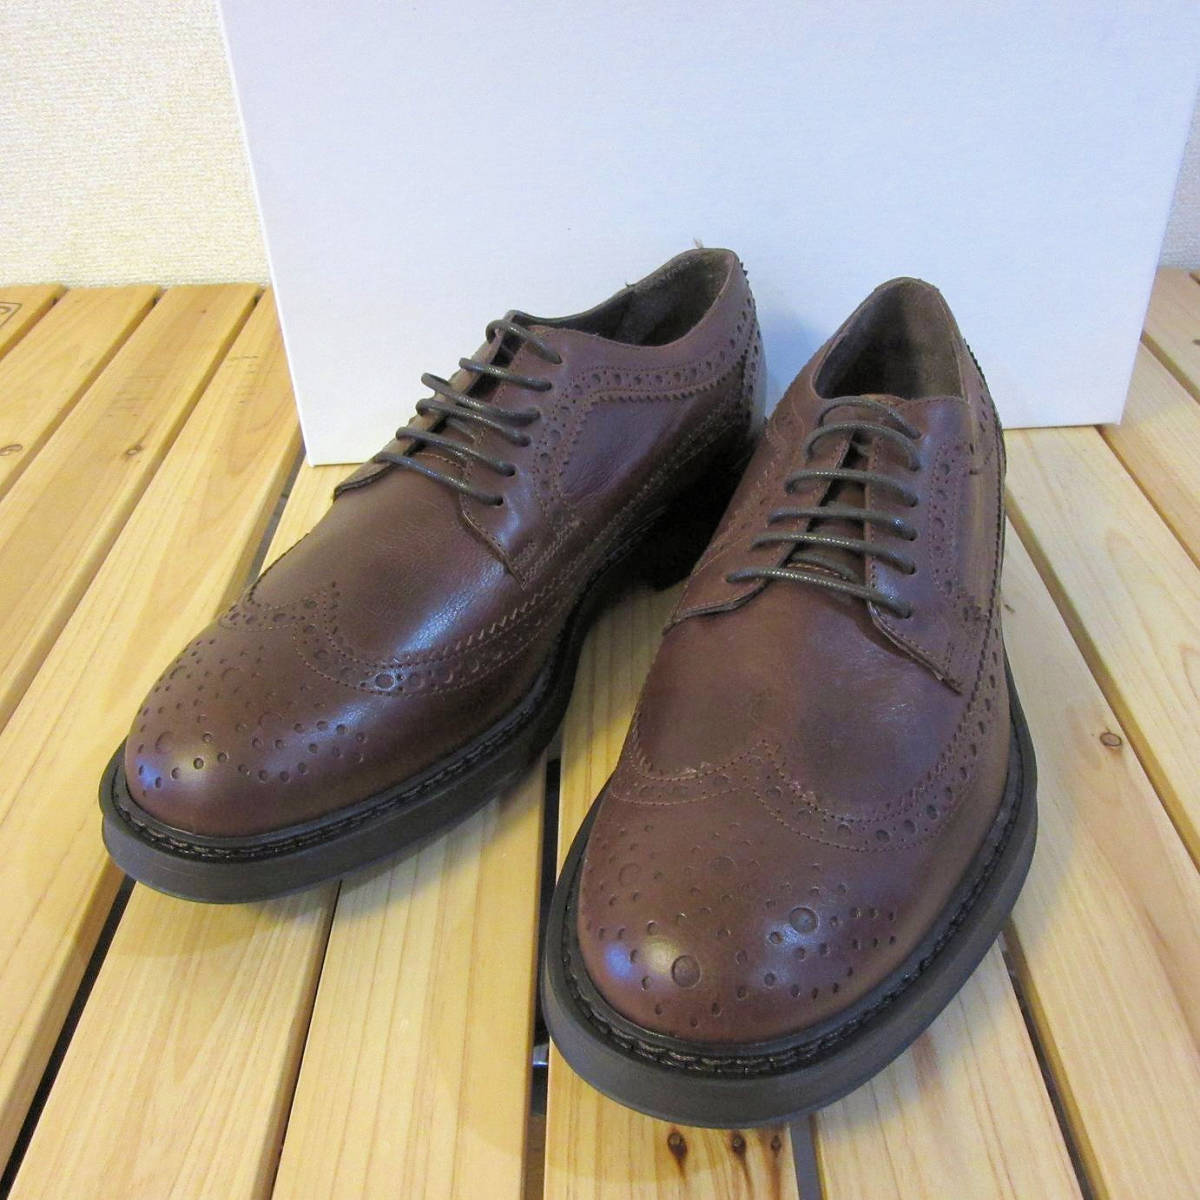 未使用 やや傷・スレあり BOEMOS ボエモス レザーシューズ 革靴 ブローグシューズ ビジネスシューズ ブラウン 茶色 メンズ 41 26cm 程度 の画像1